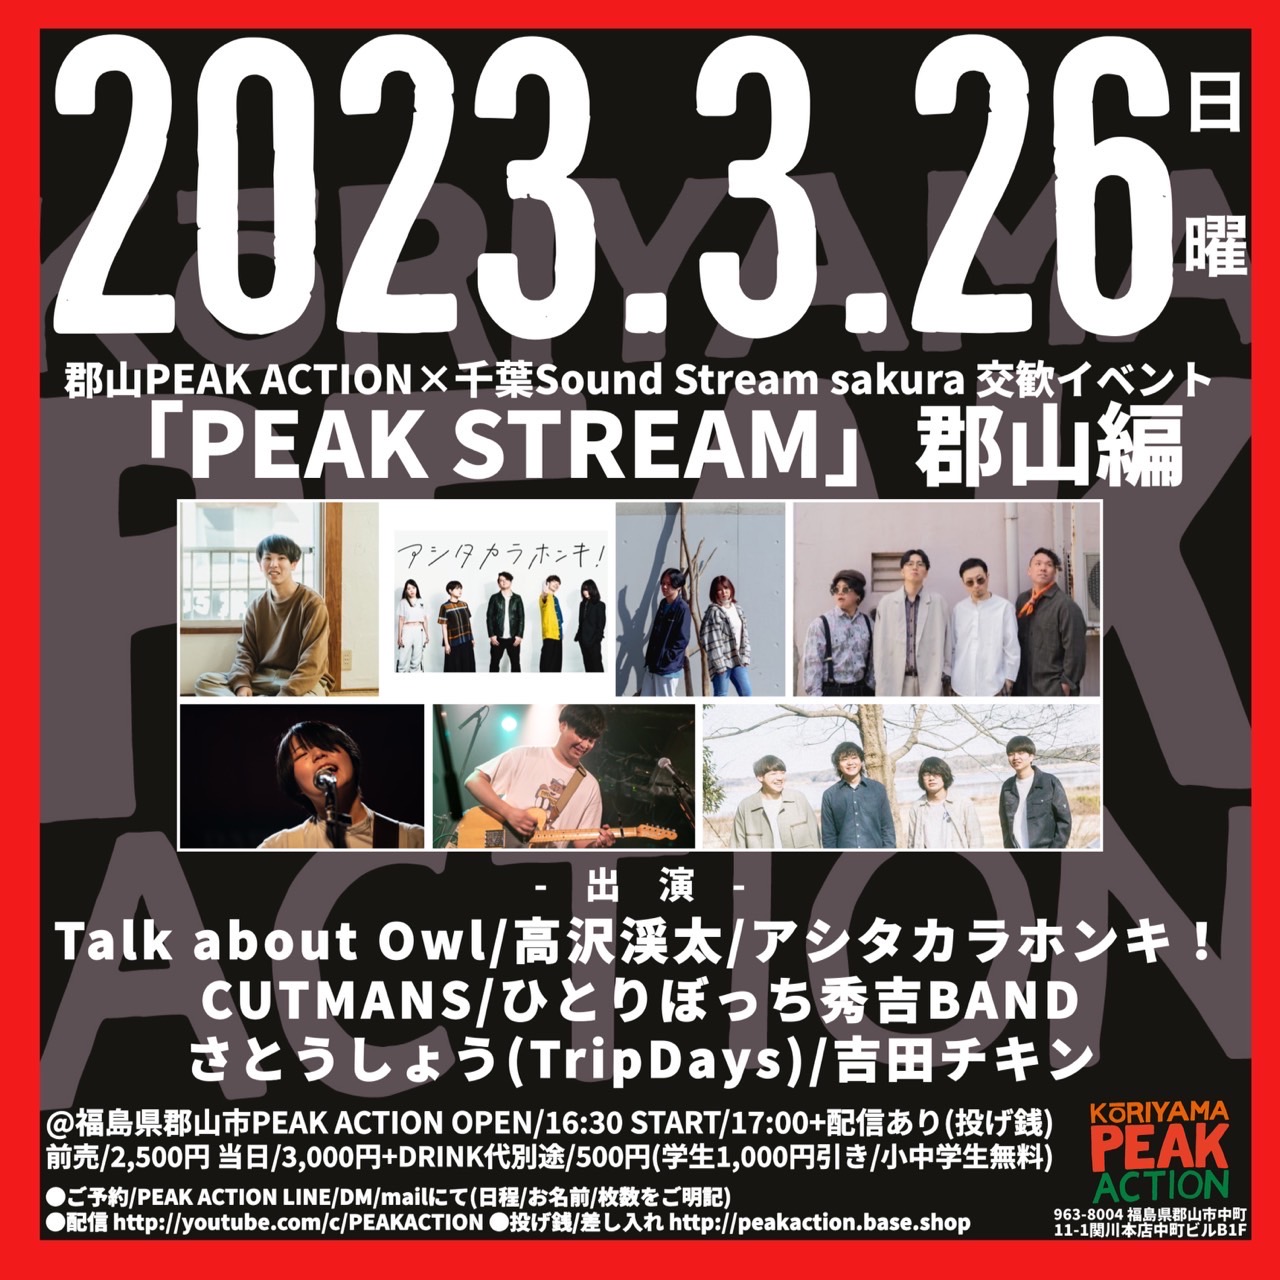 郡山PEAK ACTION×千葉Sound Stream sakura 交歓イベント “PEAK STREAM”郡山編